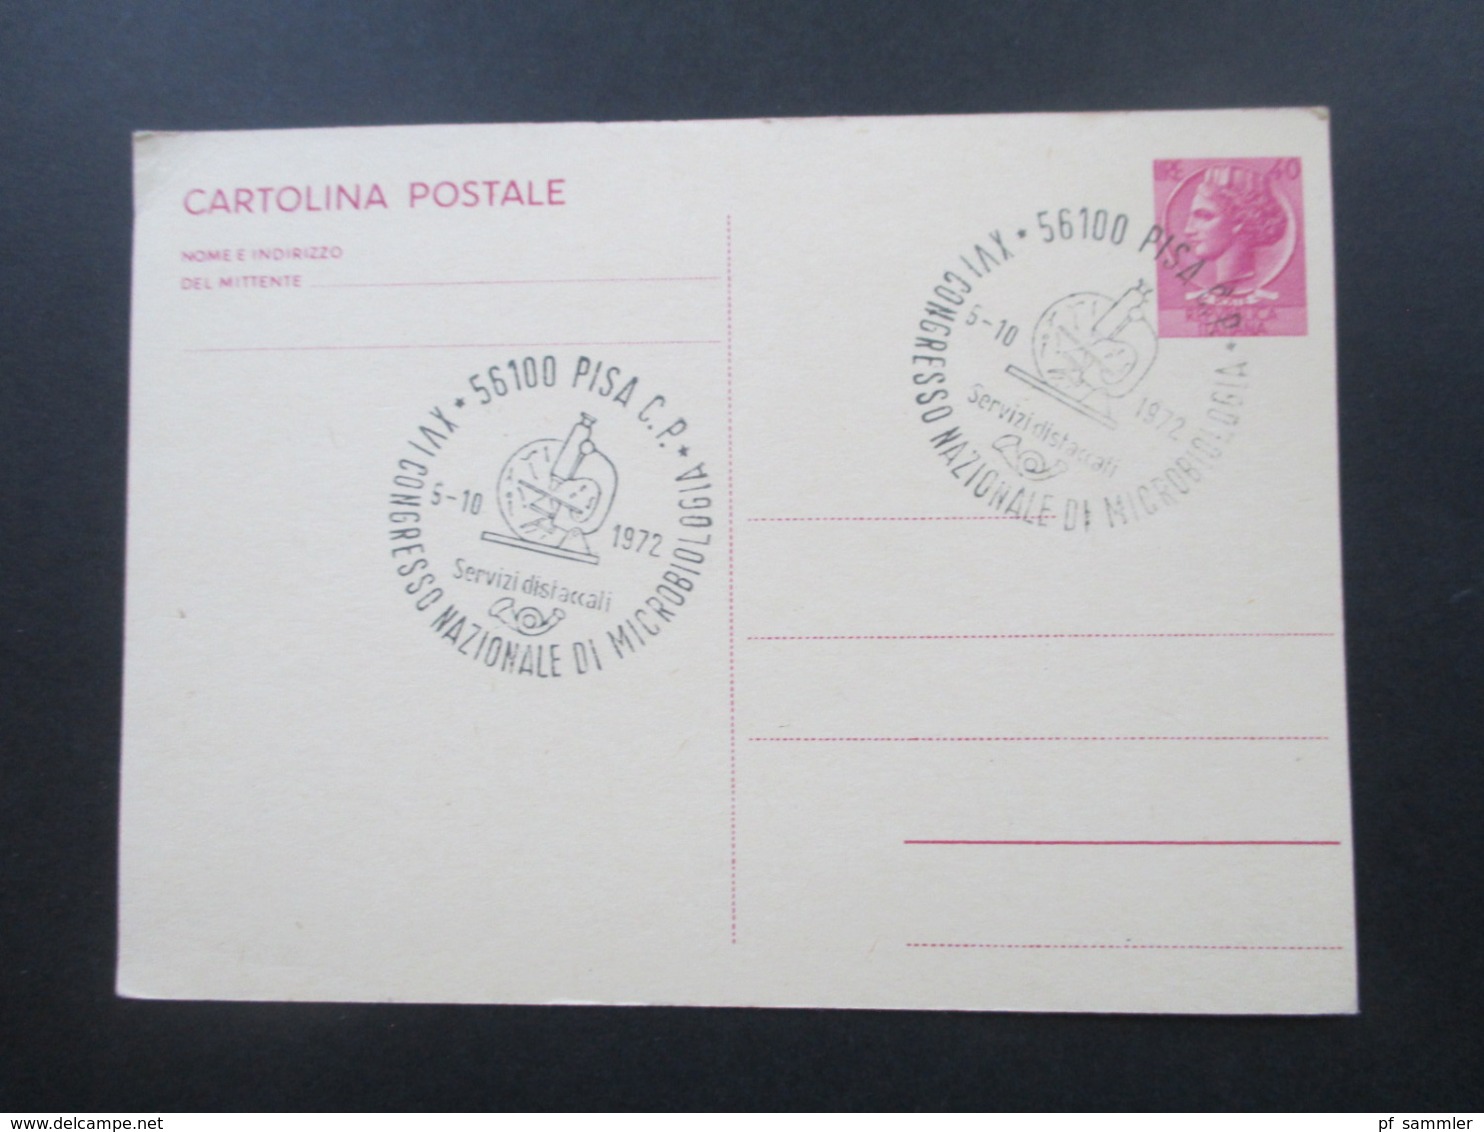 Italien 1885 - 1983 Ganzsachen Posten mit 40 Stück / viele alte!! Auch Zensurstempel. Fast alle ins Ausland / Schweiz.